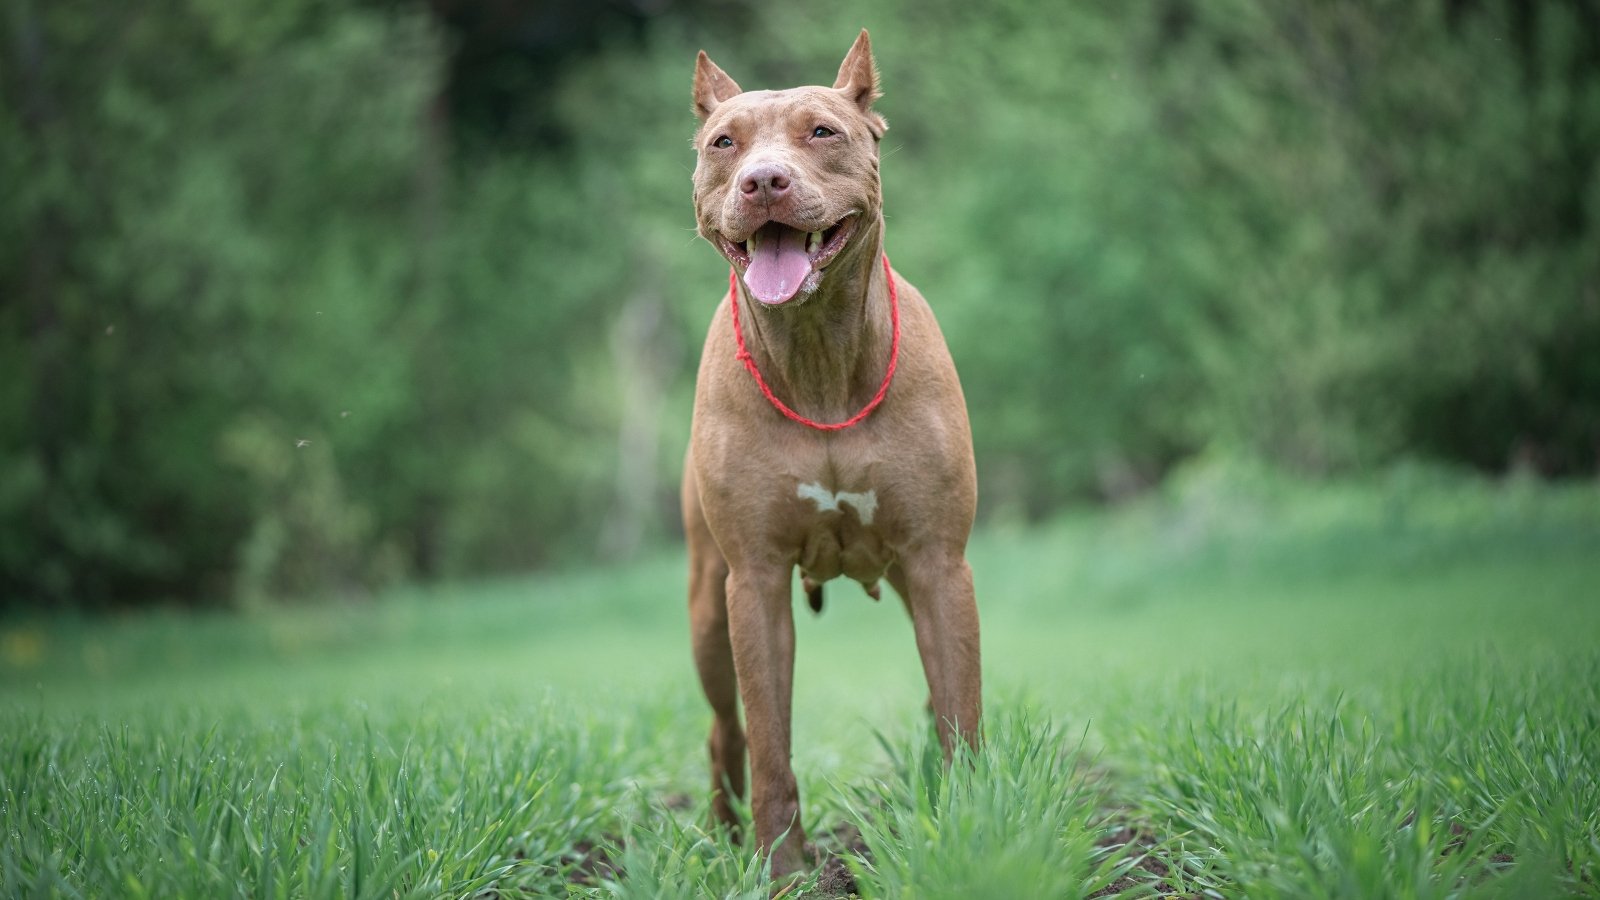 A pit bull terrier in a field